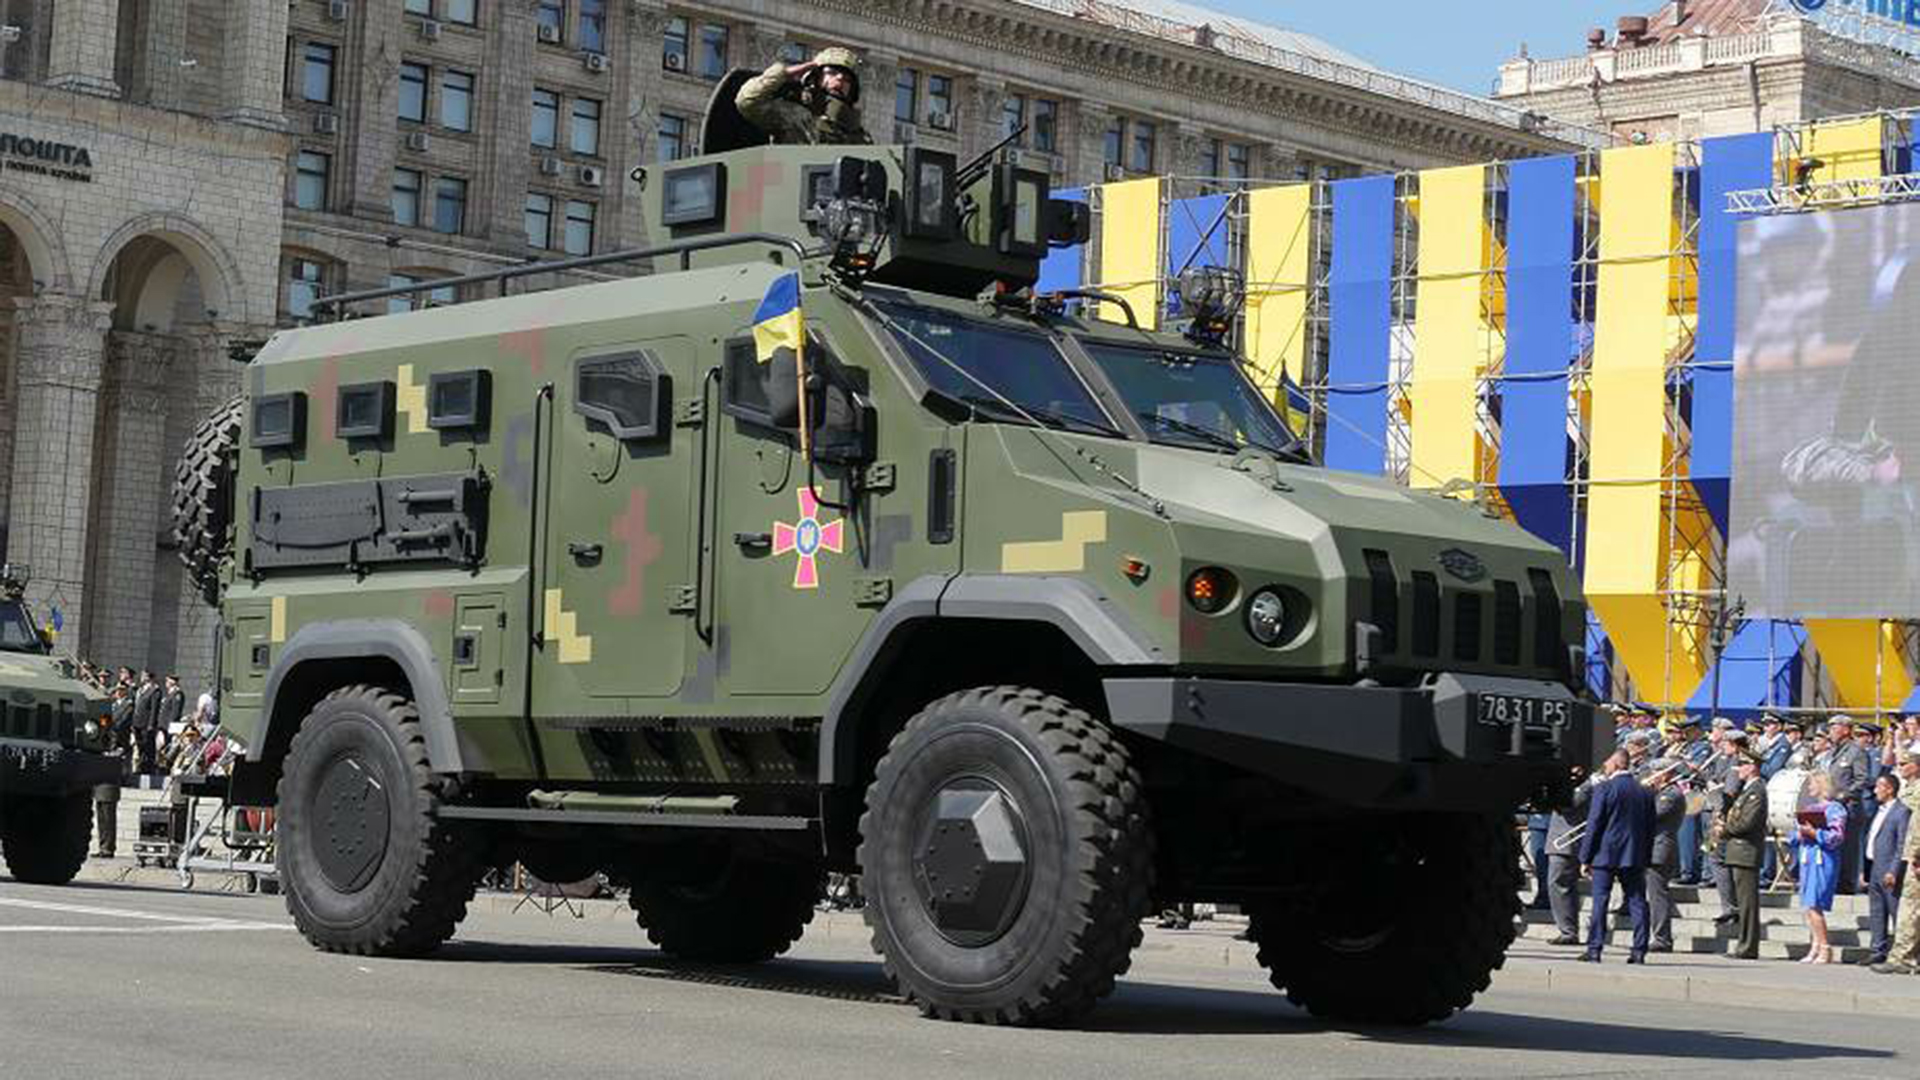 Los vehículos ucranianos se distinguen por unas marcas "pixeladas" en su carrocería.